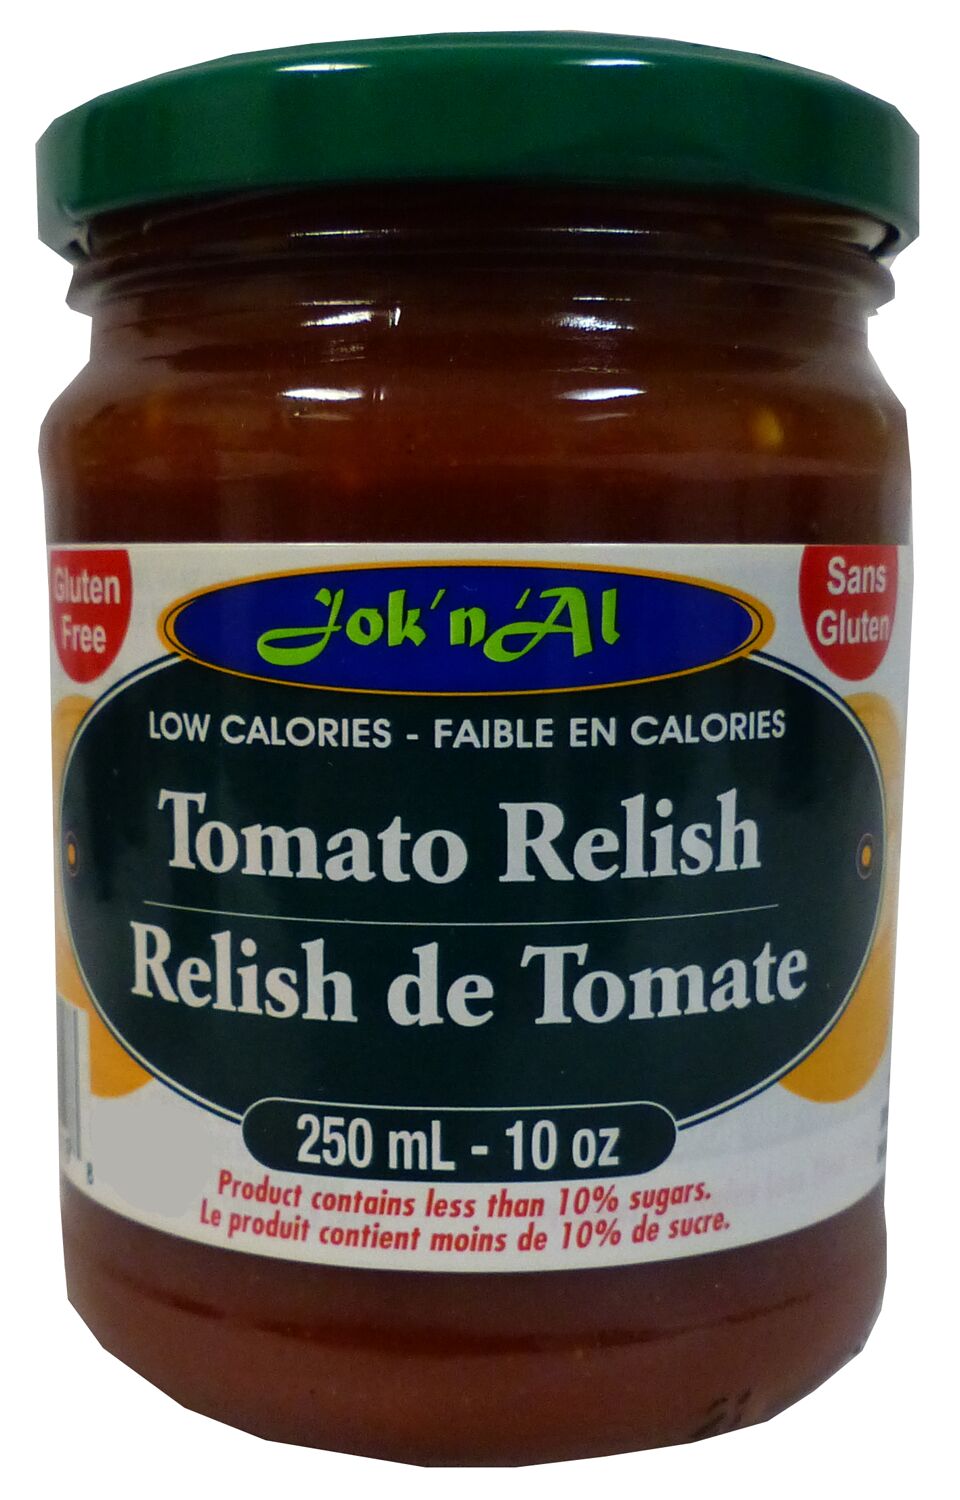 Jok n Al Low Calorie Tomato Relish 10 oz. - High-quality Gluten Free by Jok n Al at 